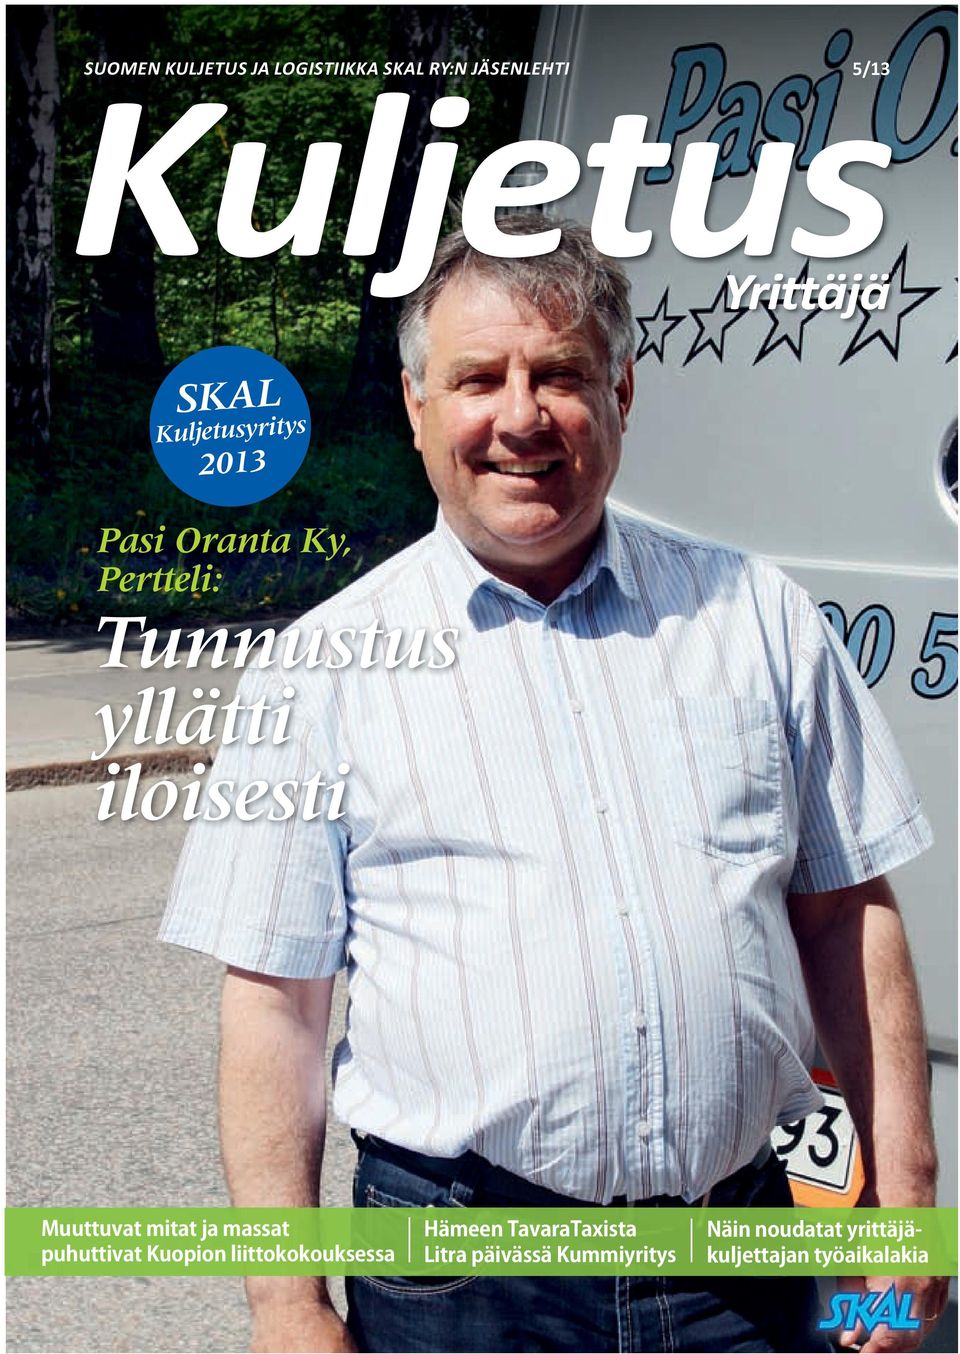 Yrittäjä SKAL Kuljetusyritys 2013